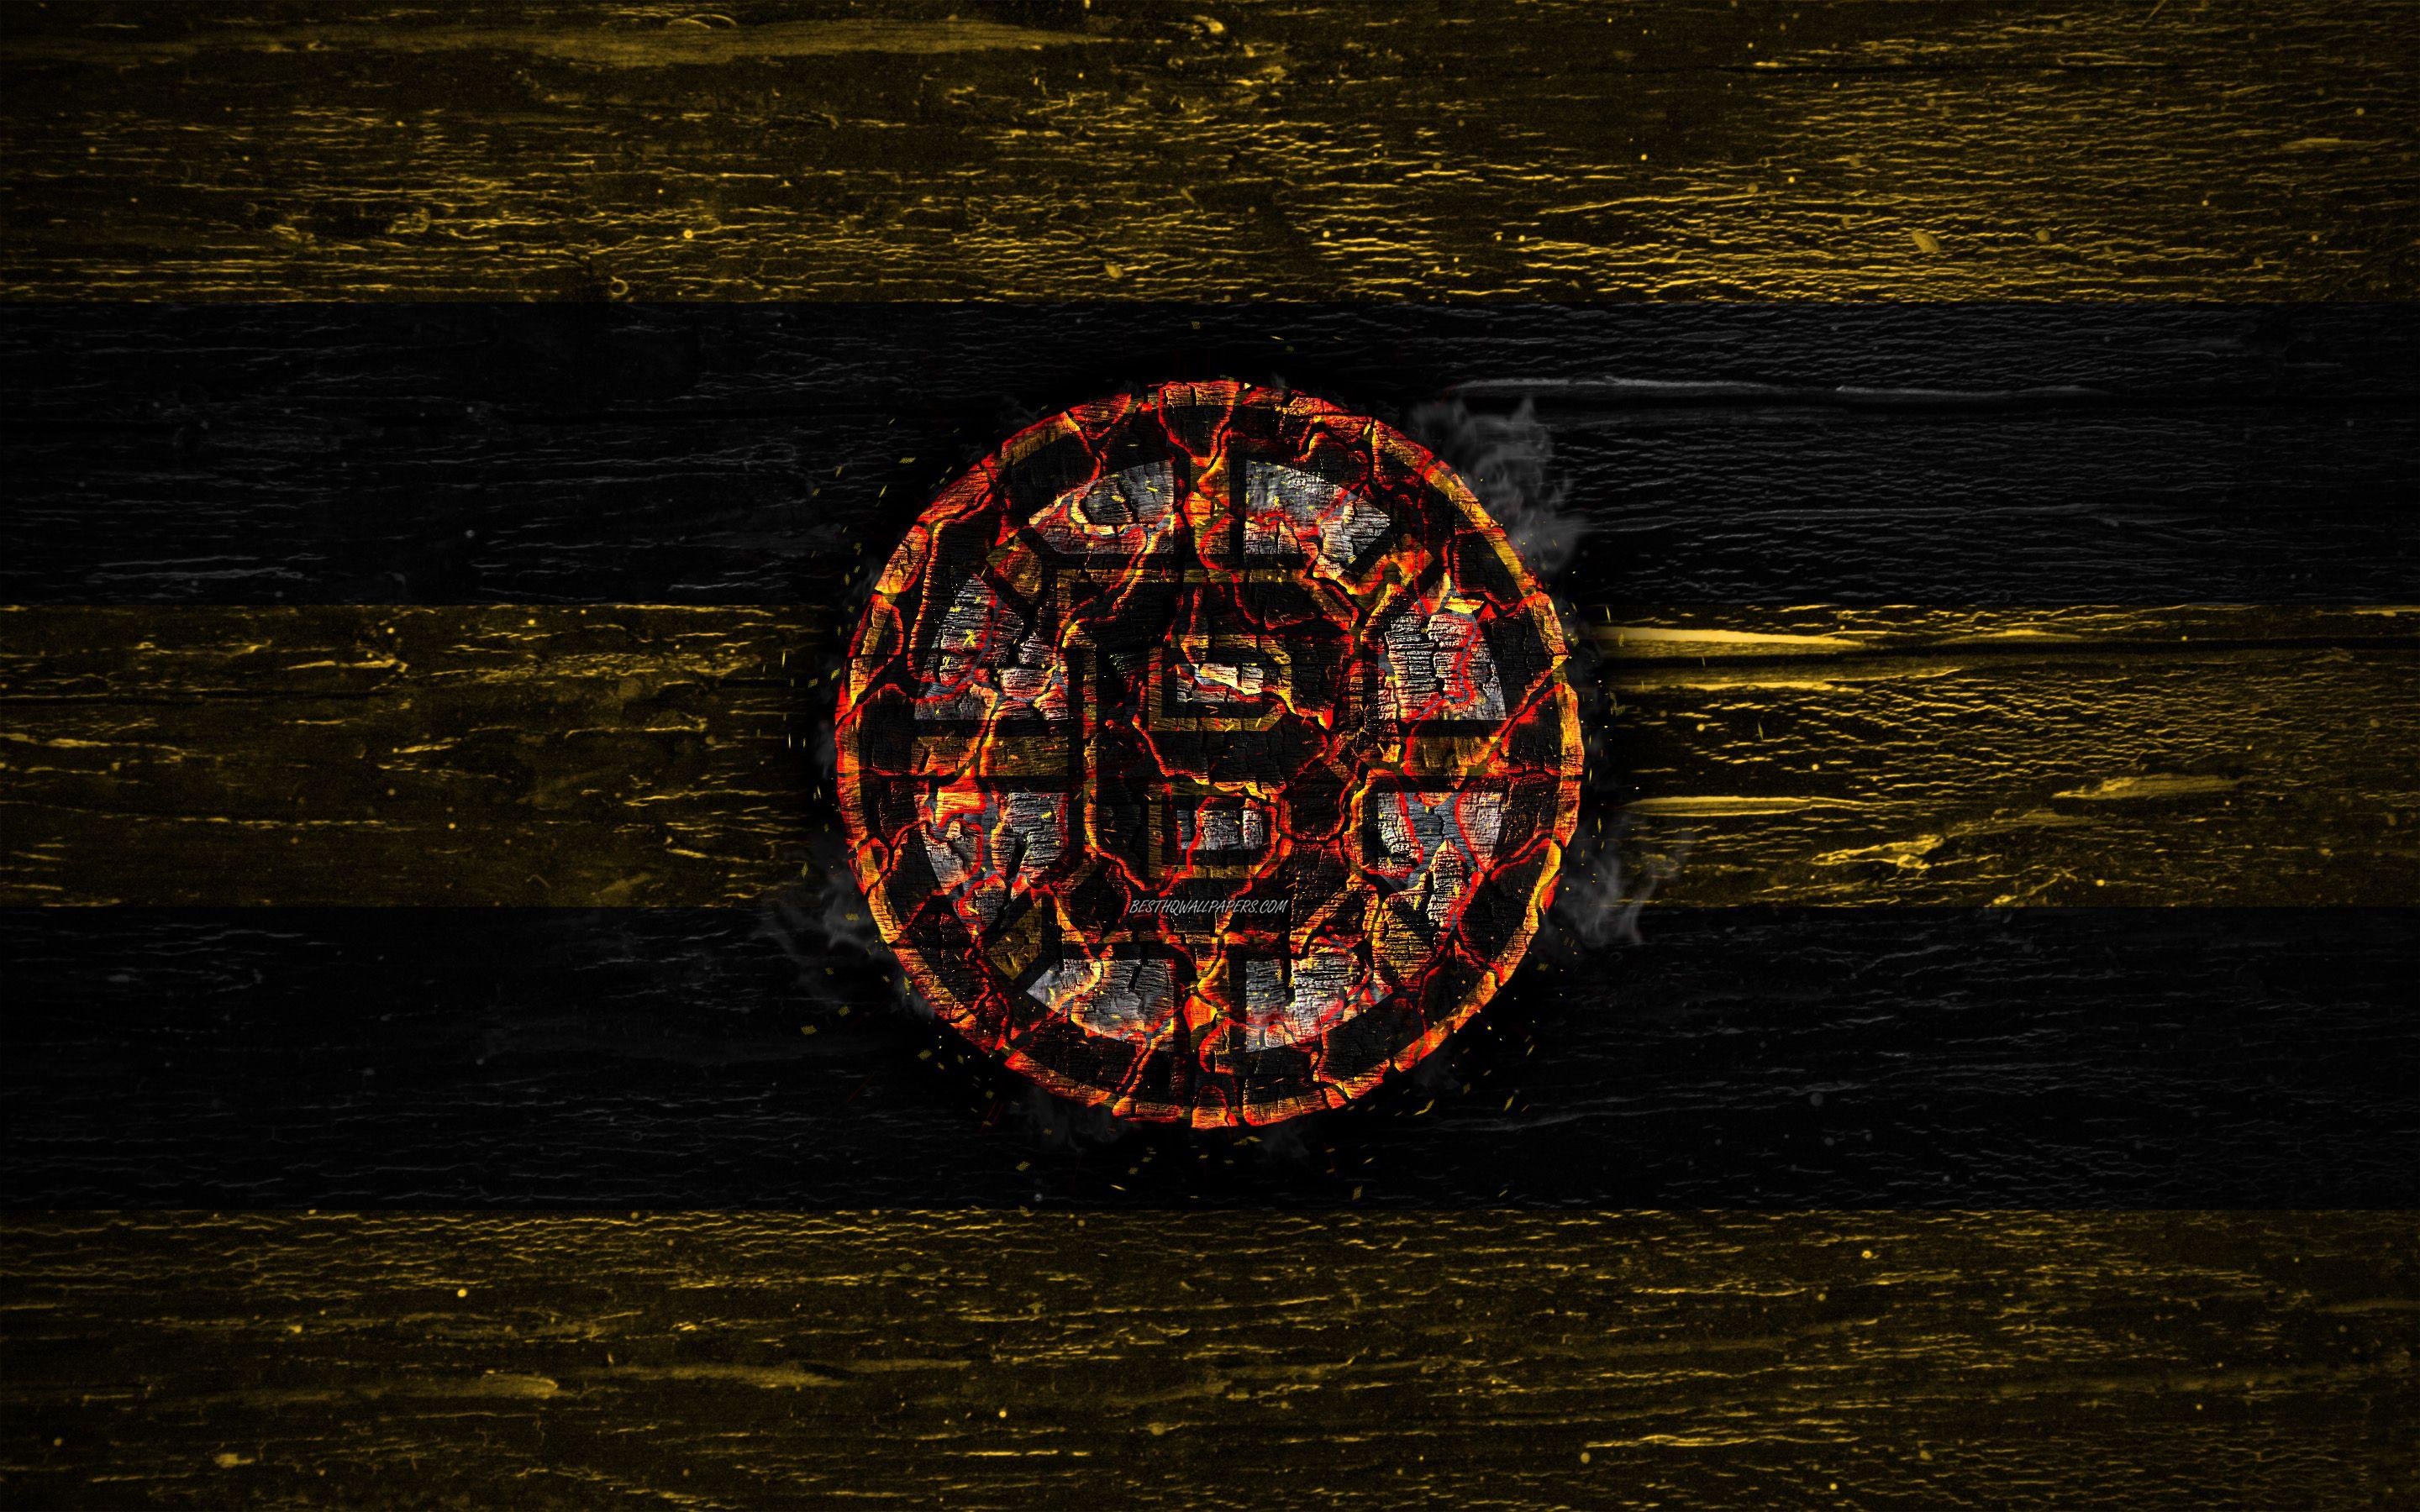 2880x1800 Tải xuống hình nền Boston Bruins, logo lửa, NHL, đường màu vàng và đen, đội khúc côn cầu Mỹ, grunge, khúc côn cầu, logo, hình nền Boston Bruins, Hội nghị phương Đông, kết cấu bằng gỗ, Hoa Kỳ cho máy tính để bàn với độ phân giải 2880x1800.  Chất lượng cao